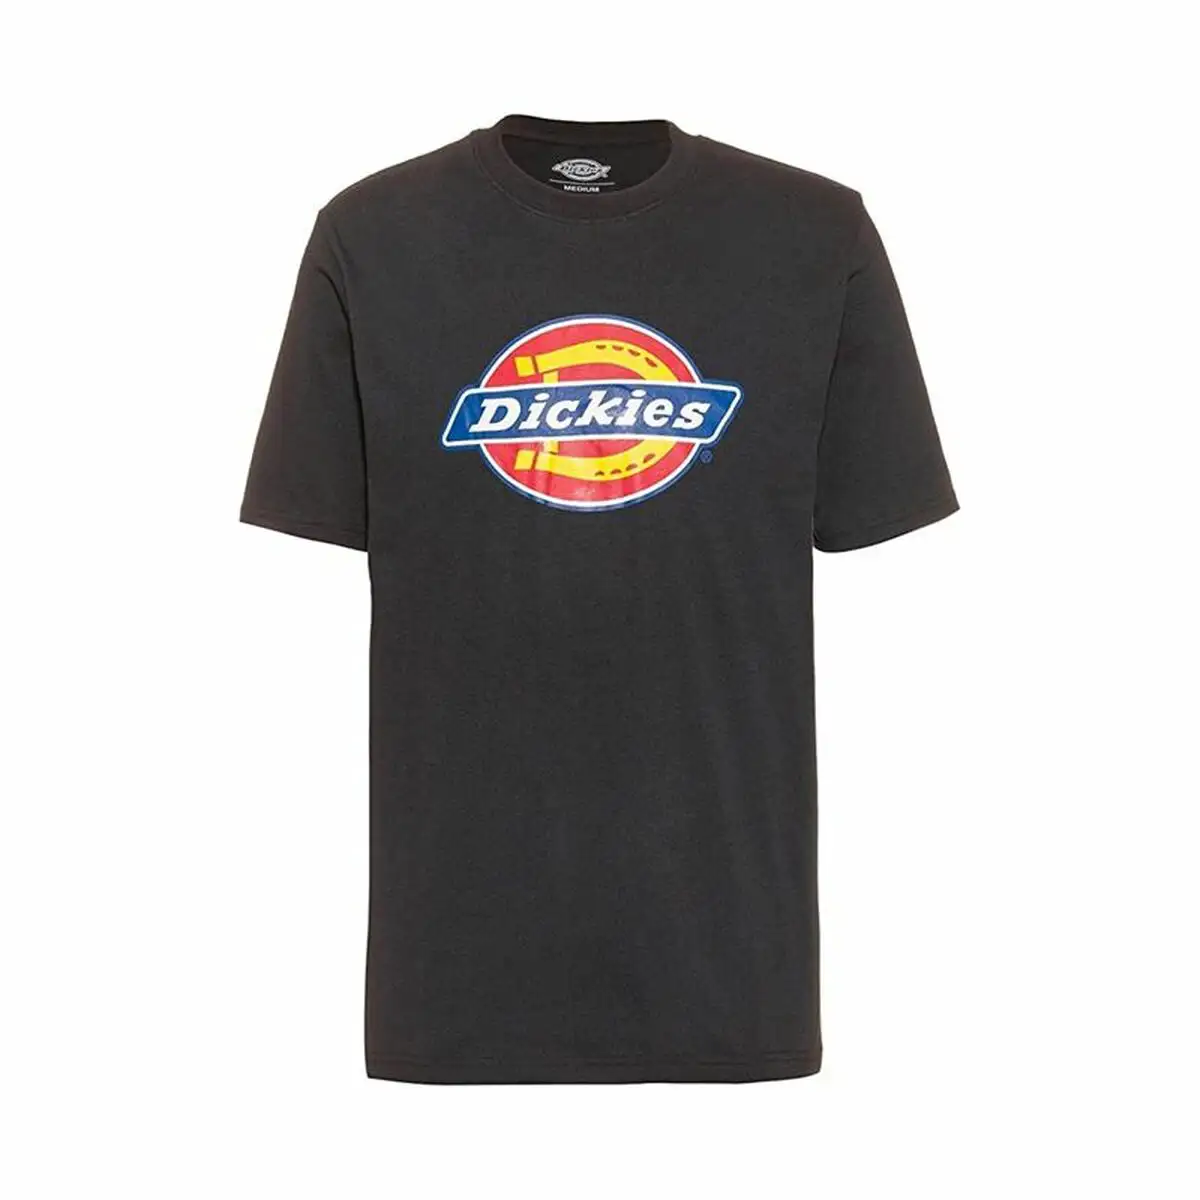 Shirt a manches courtes dickies icon logo noir homme_9642. DIAYTAR SENEGAL - Là où Chaque Produit a son Propre Éclat. Explorez notre boutique en ligne et trouvez des articles qui ajoutent de la brillance à votre quotidien.